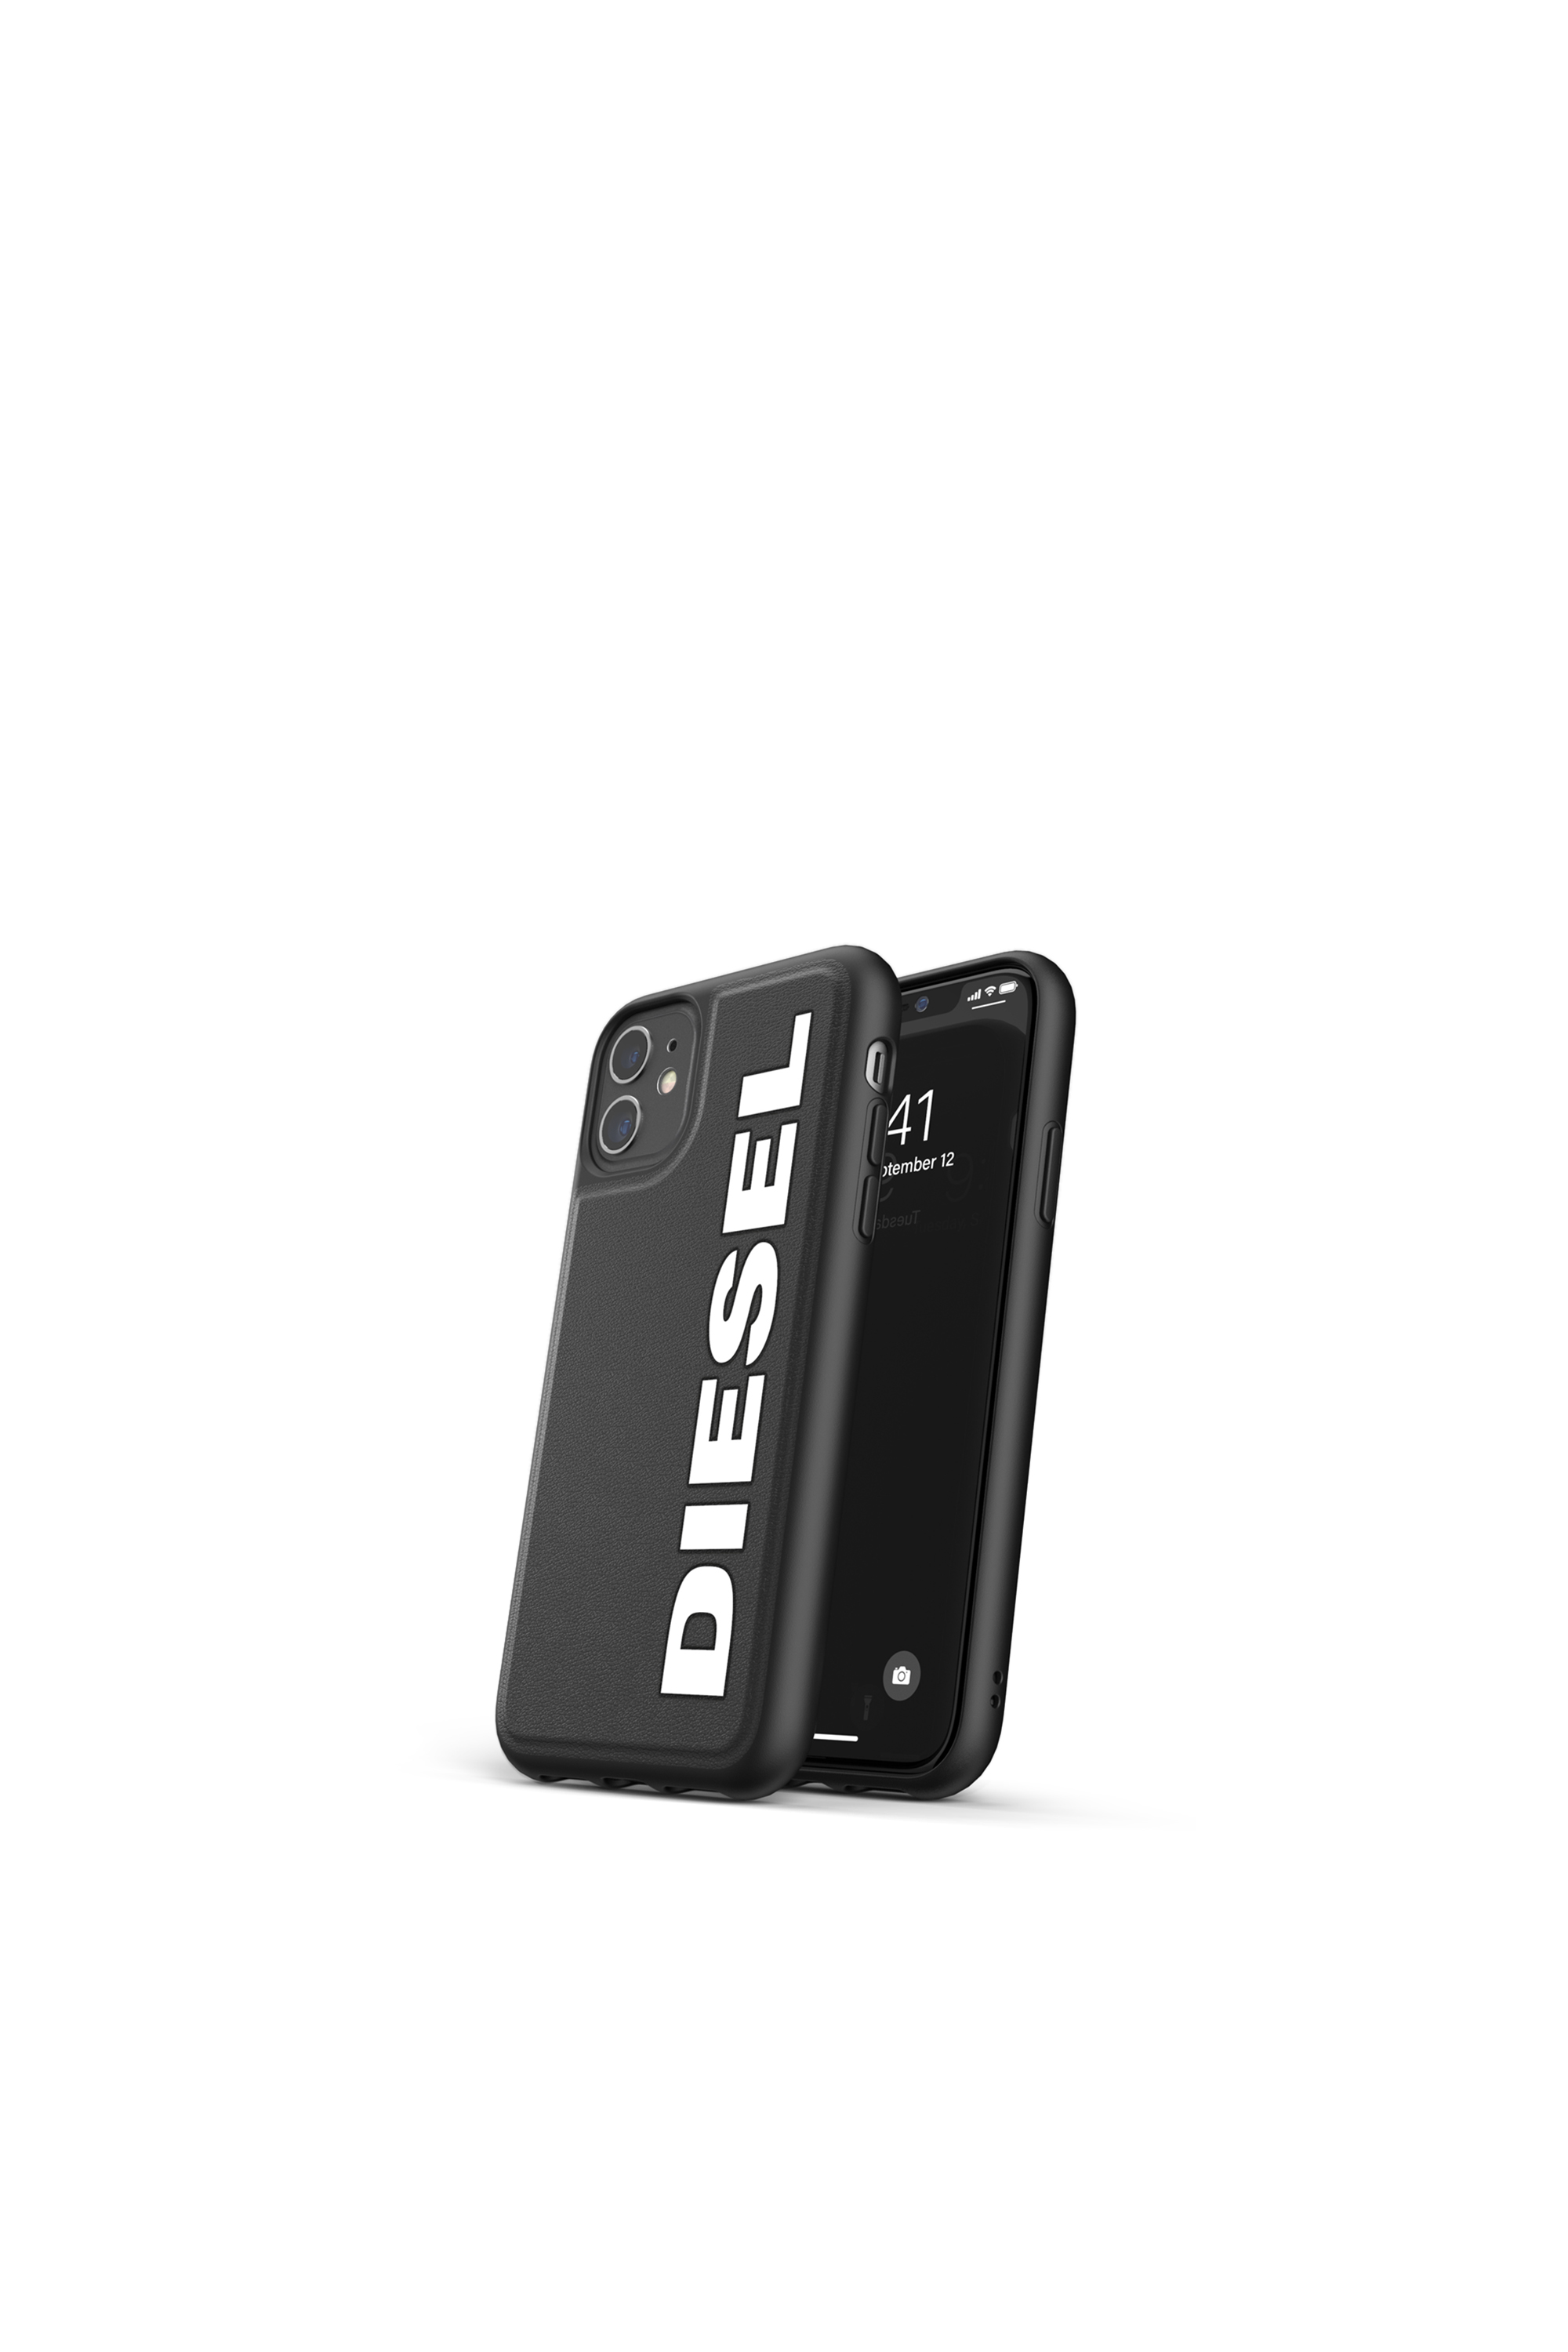 Diesel - 41981, Black - Image 3